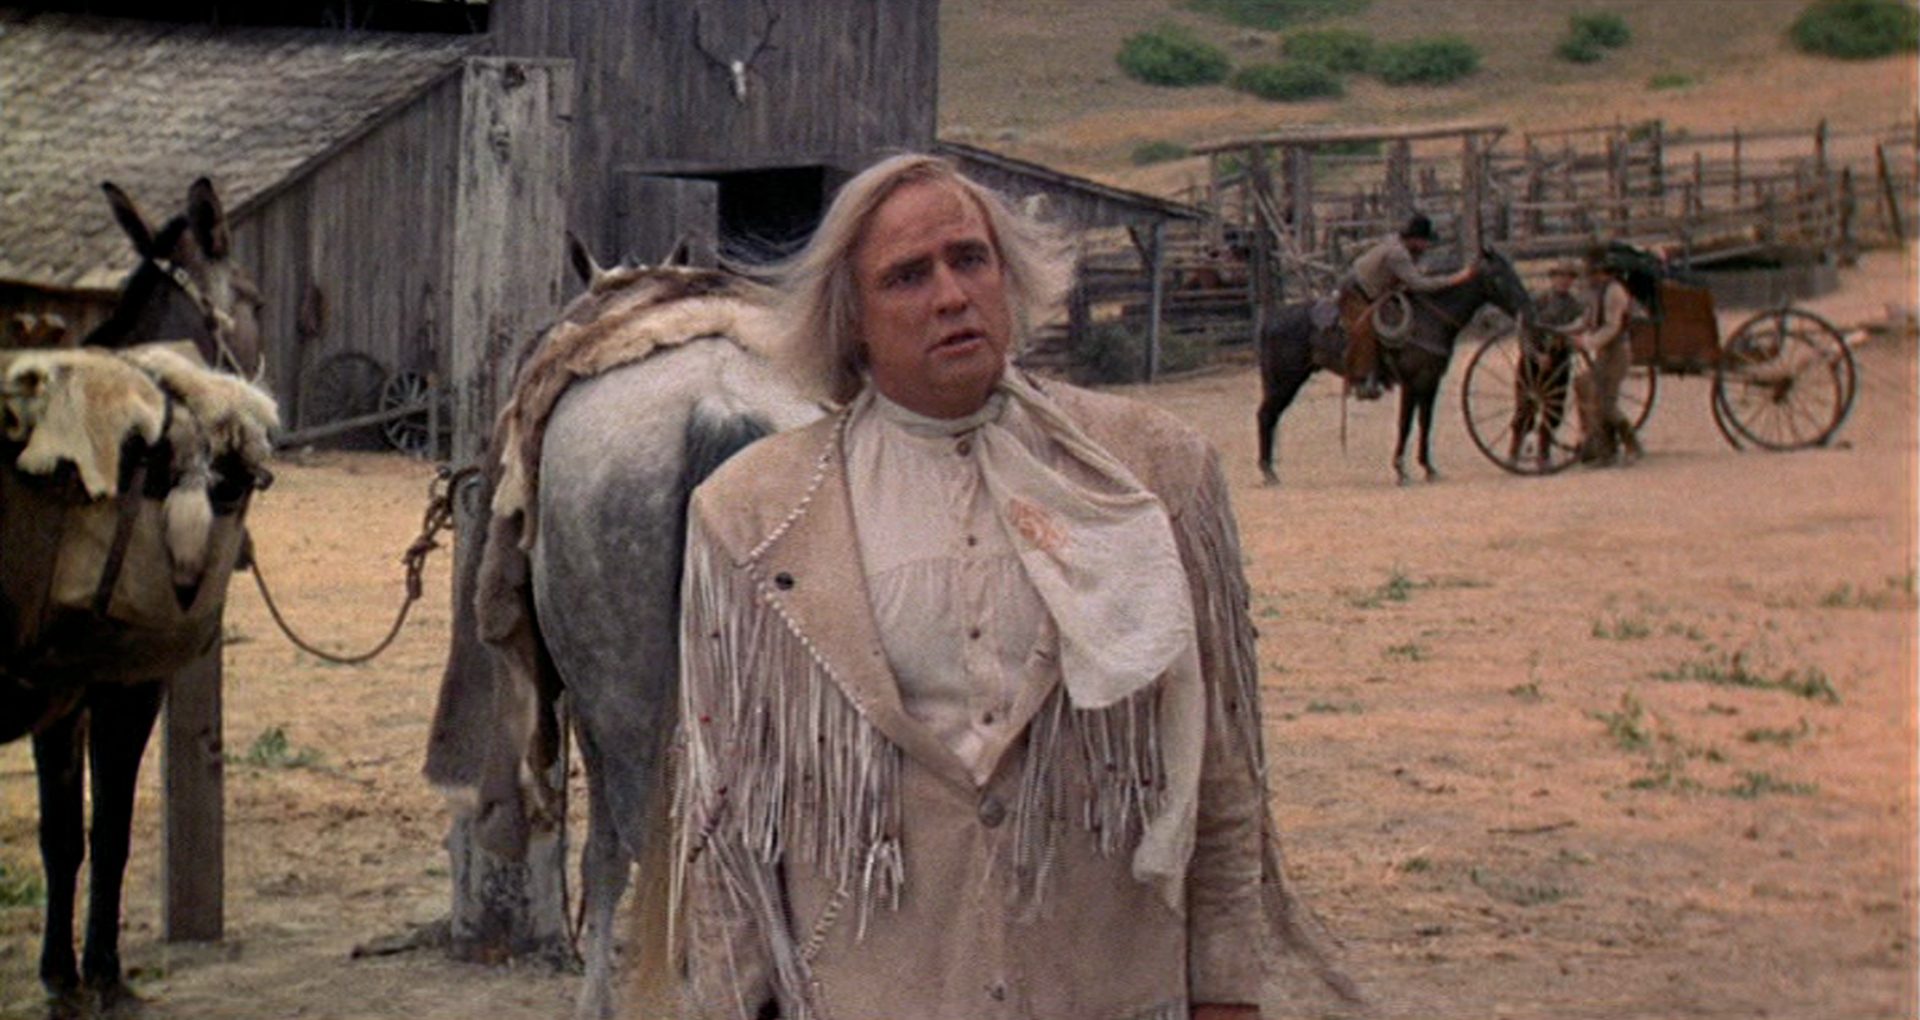 Marlon Brando as an eccentric killer against the backdrop of a ranch building.